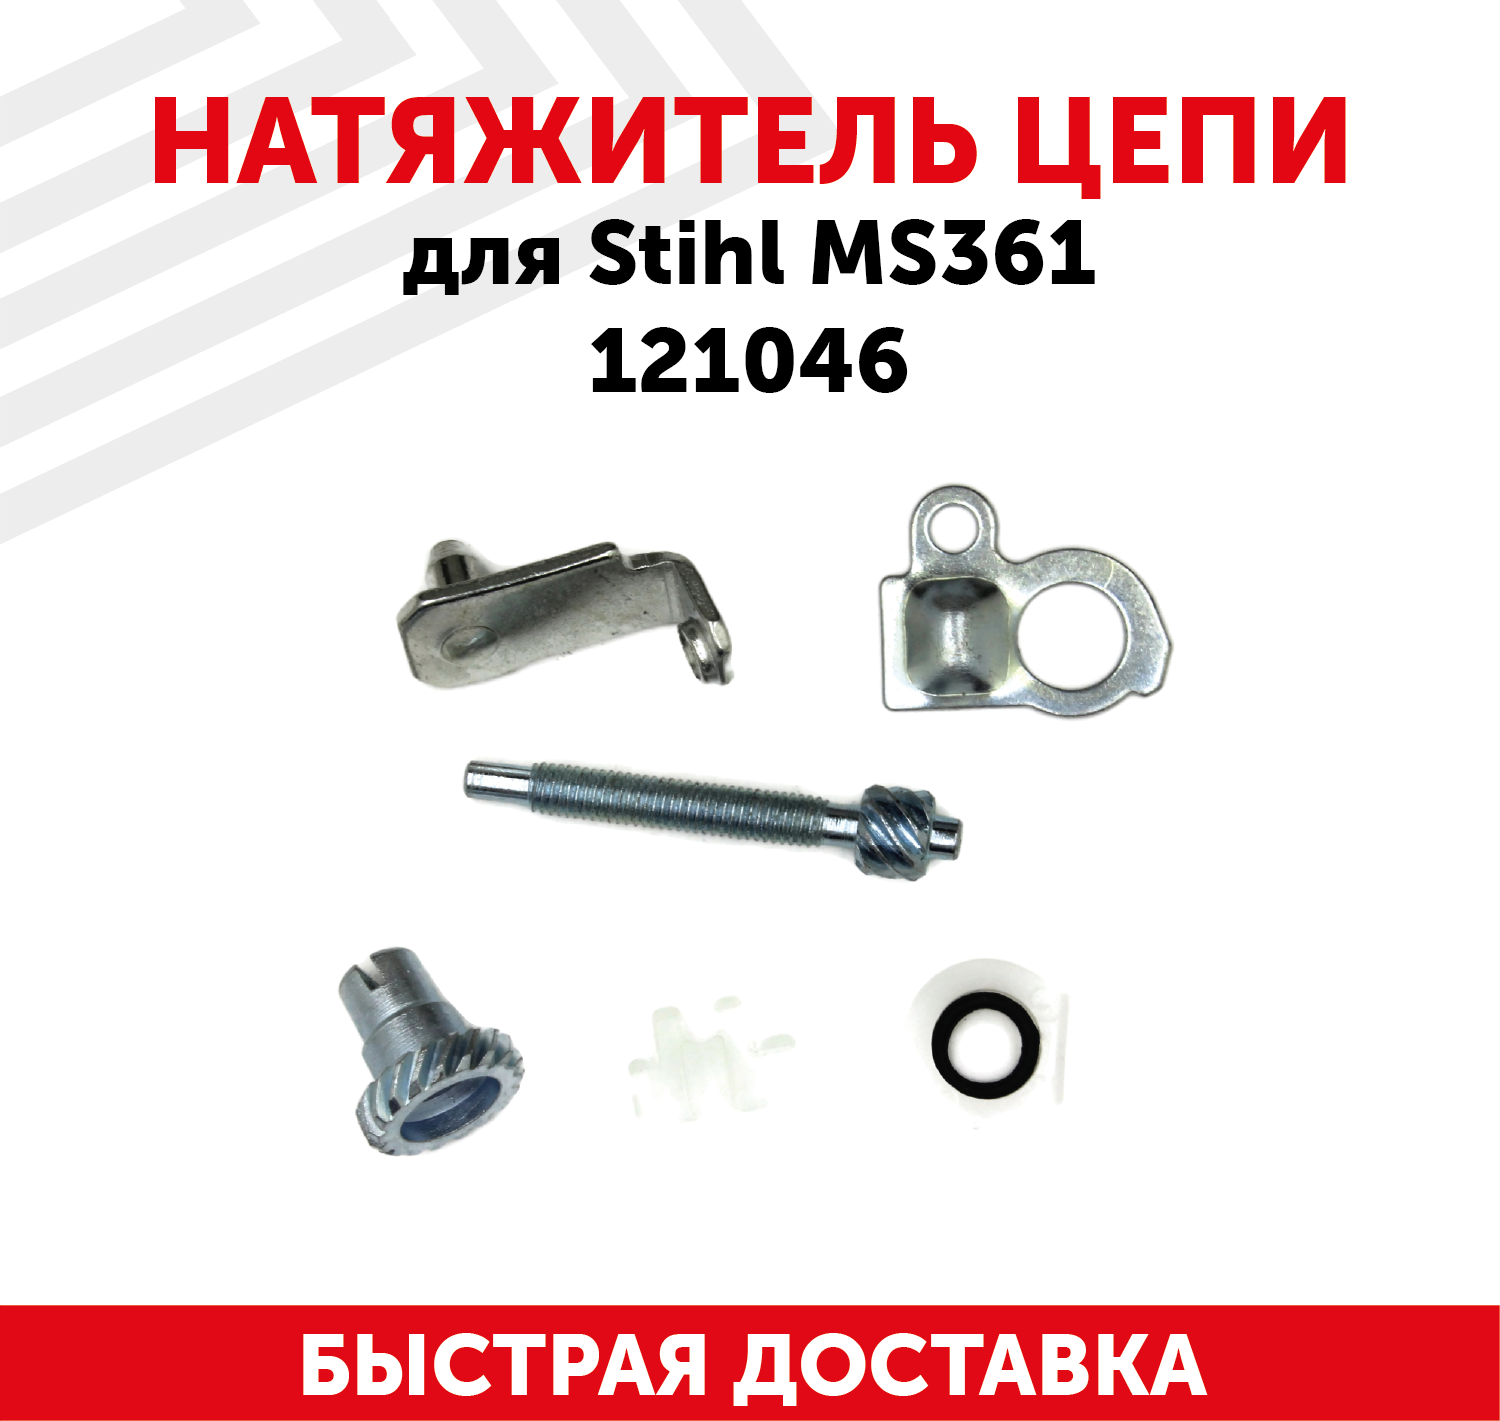 Натяжитель цепи для бензопилы (цепной пилы) Stihl MS361 121046